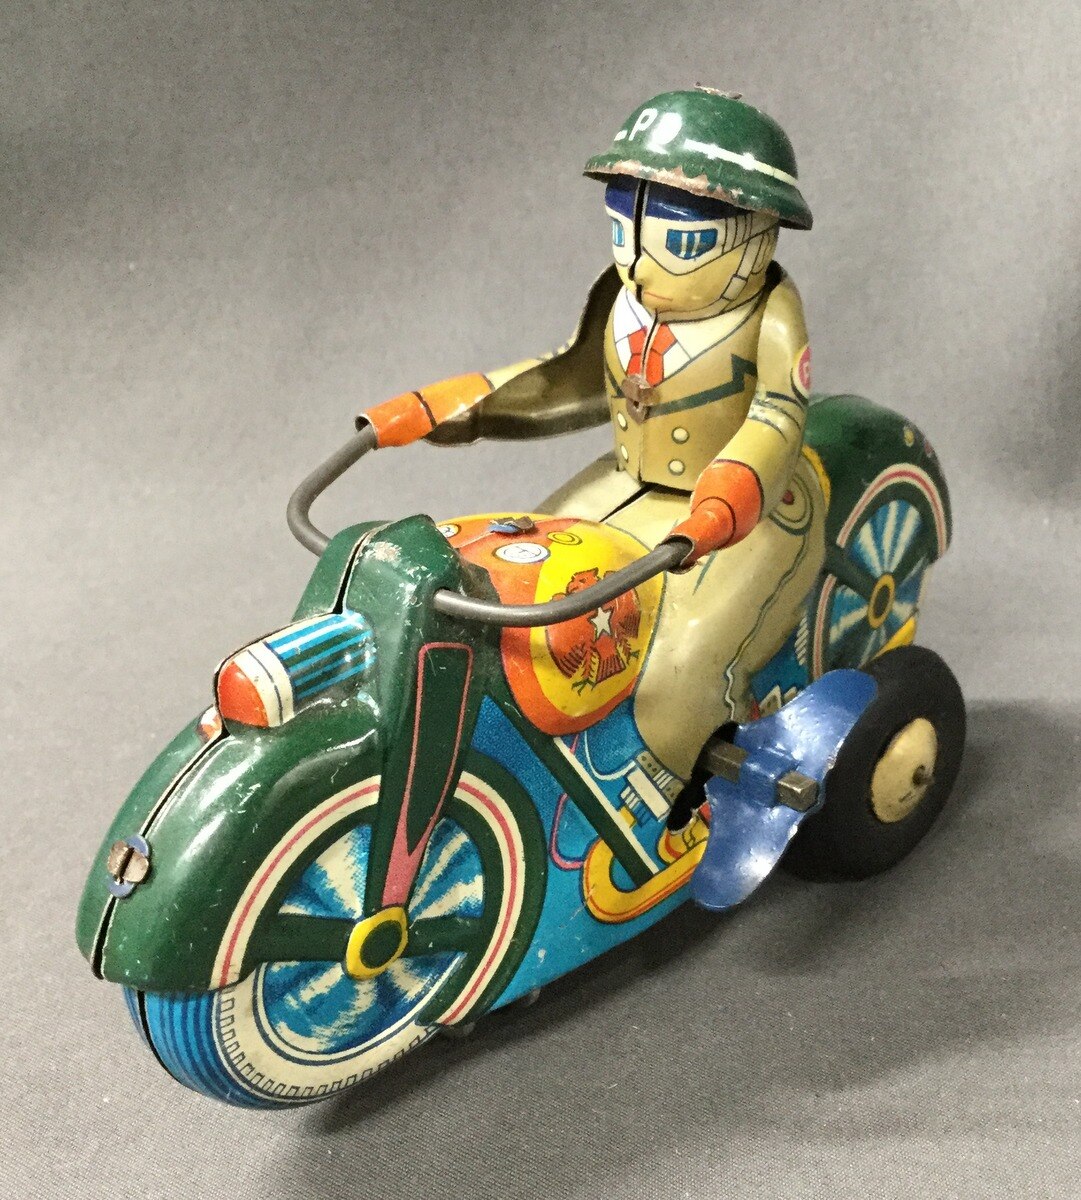 マスダヤ ゼンマイブリキROUND MOTOR-CYCLECABLE RIDER - 兵庫県のおもちゃ